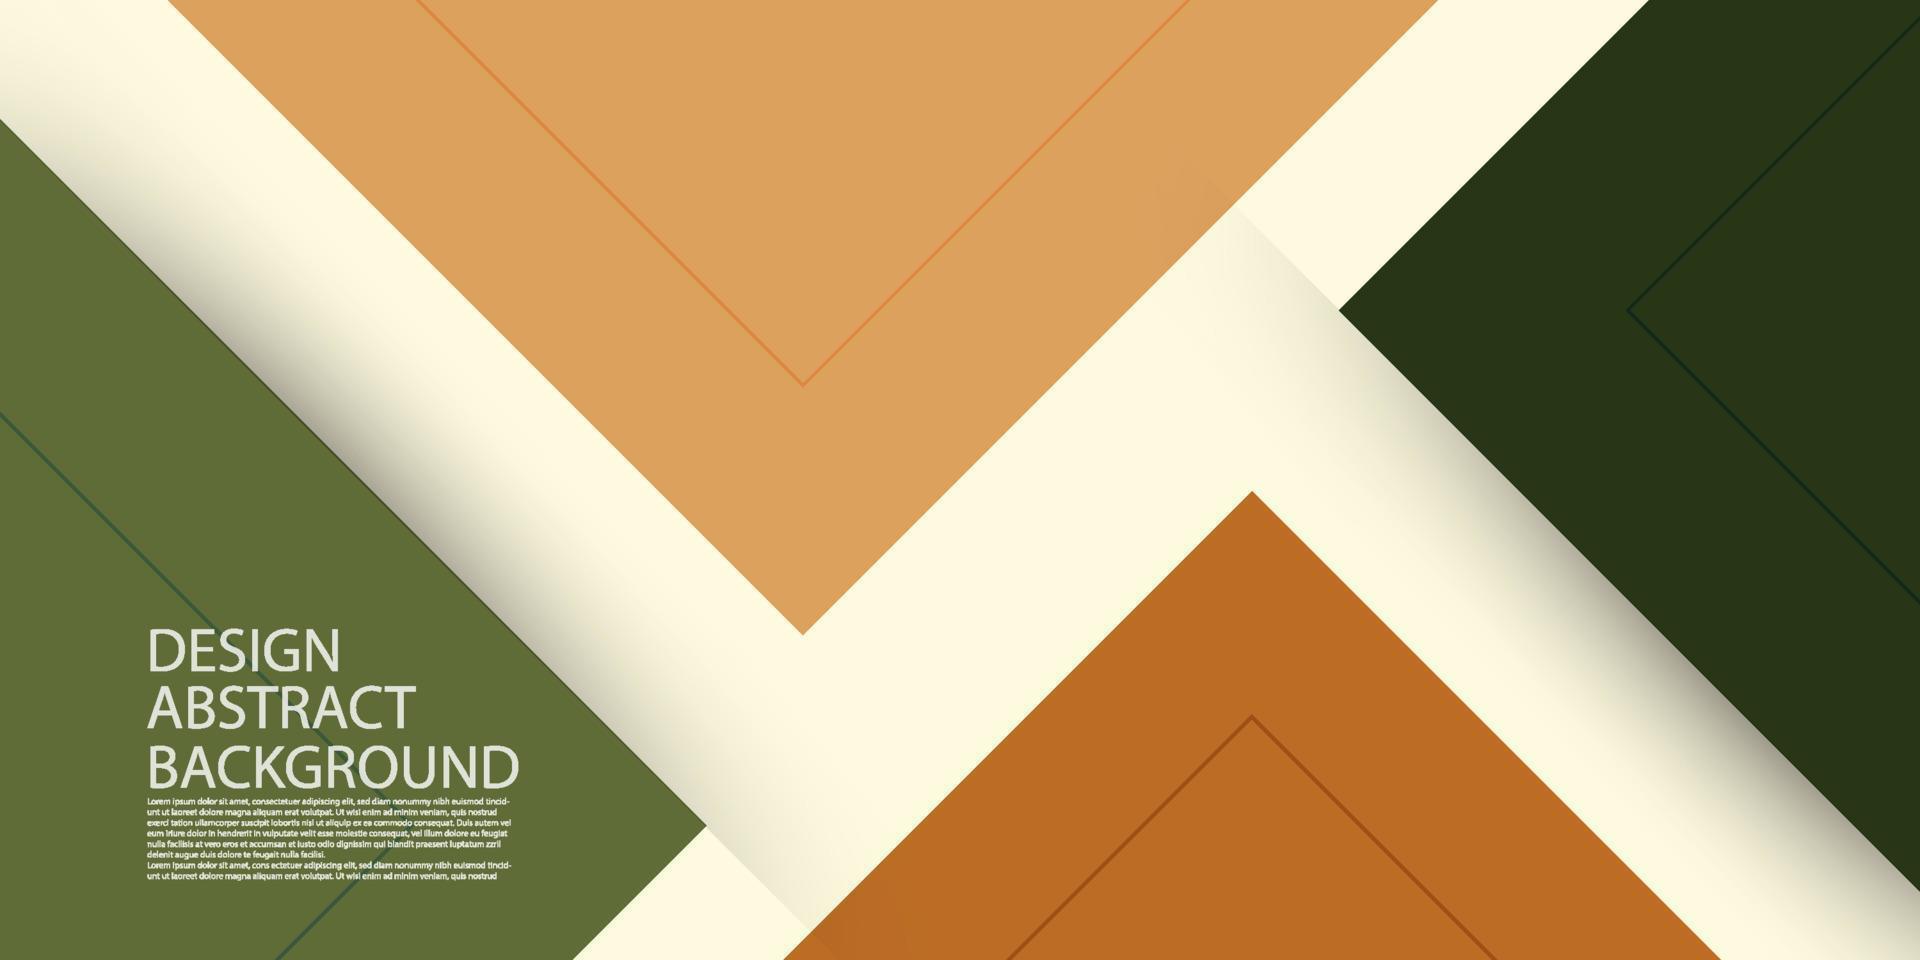 fundo geométrico abstrato moderno com triângulos. design de banner simples para o seu conteúdo de design, negócios, modelo, vetor cover.eps10